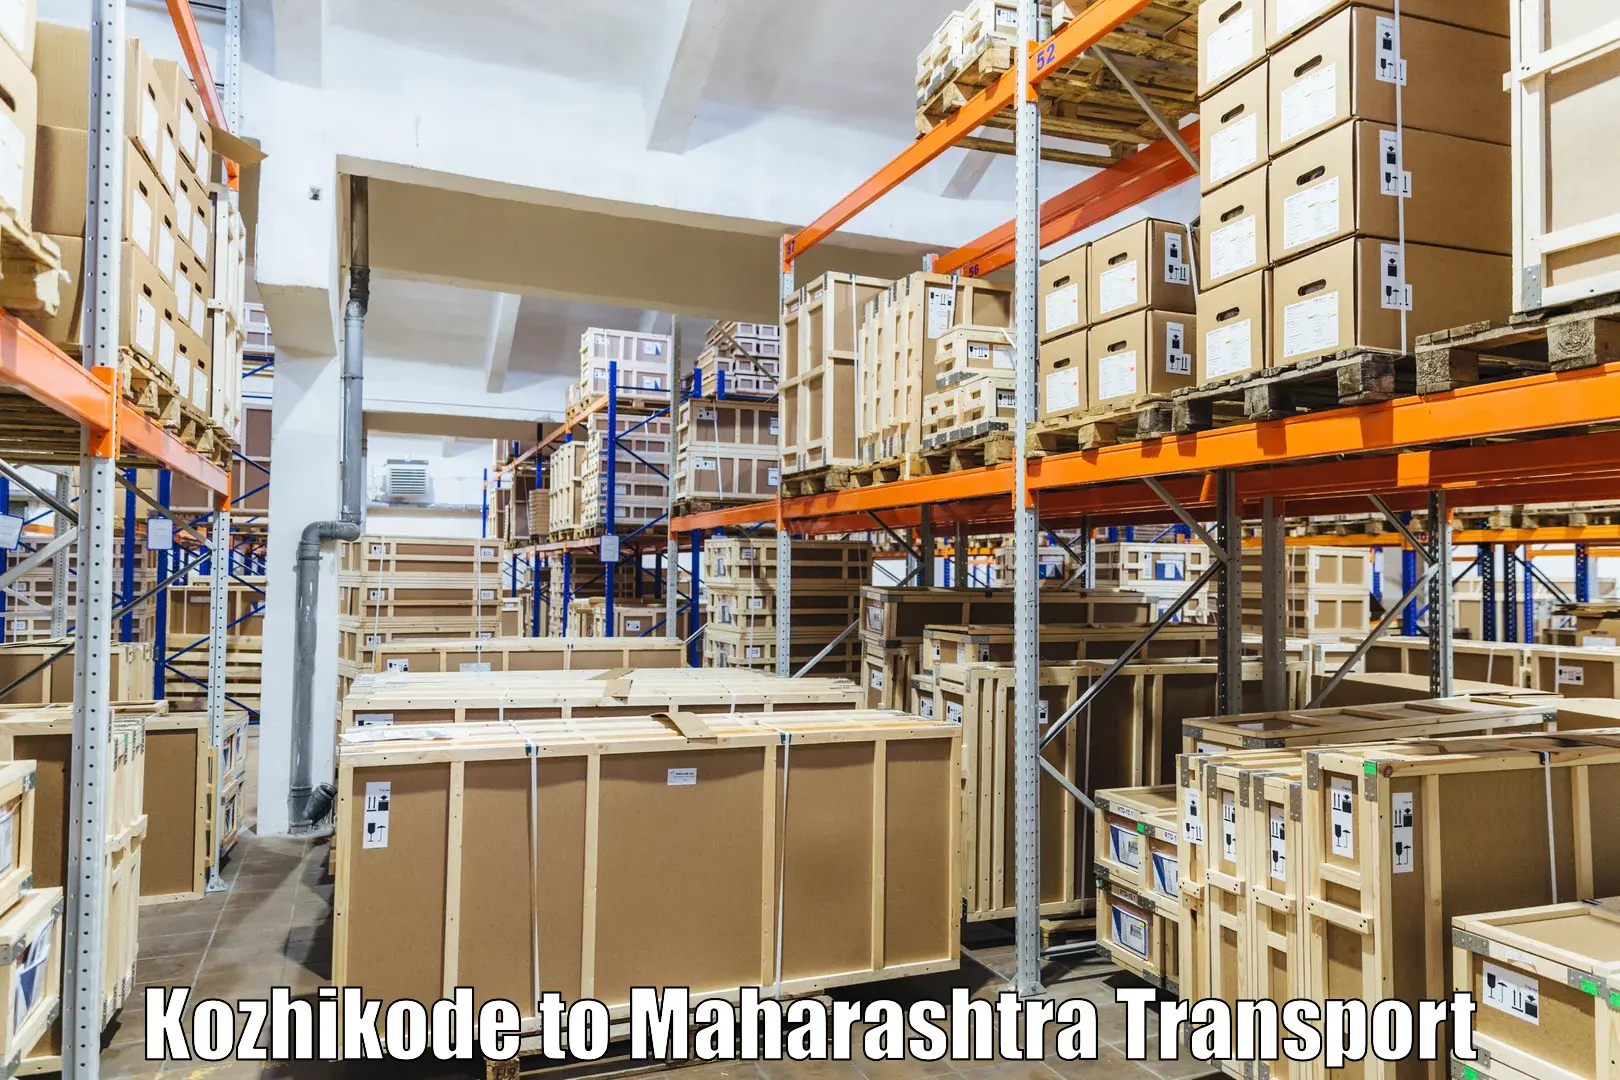 Shipping services Kozhikode to Raigarh Maharashtra